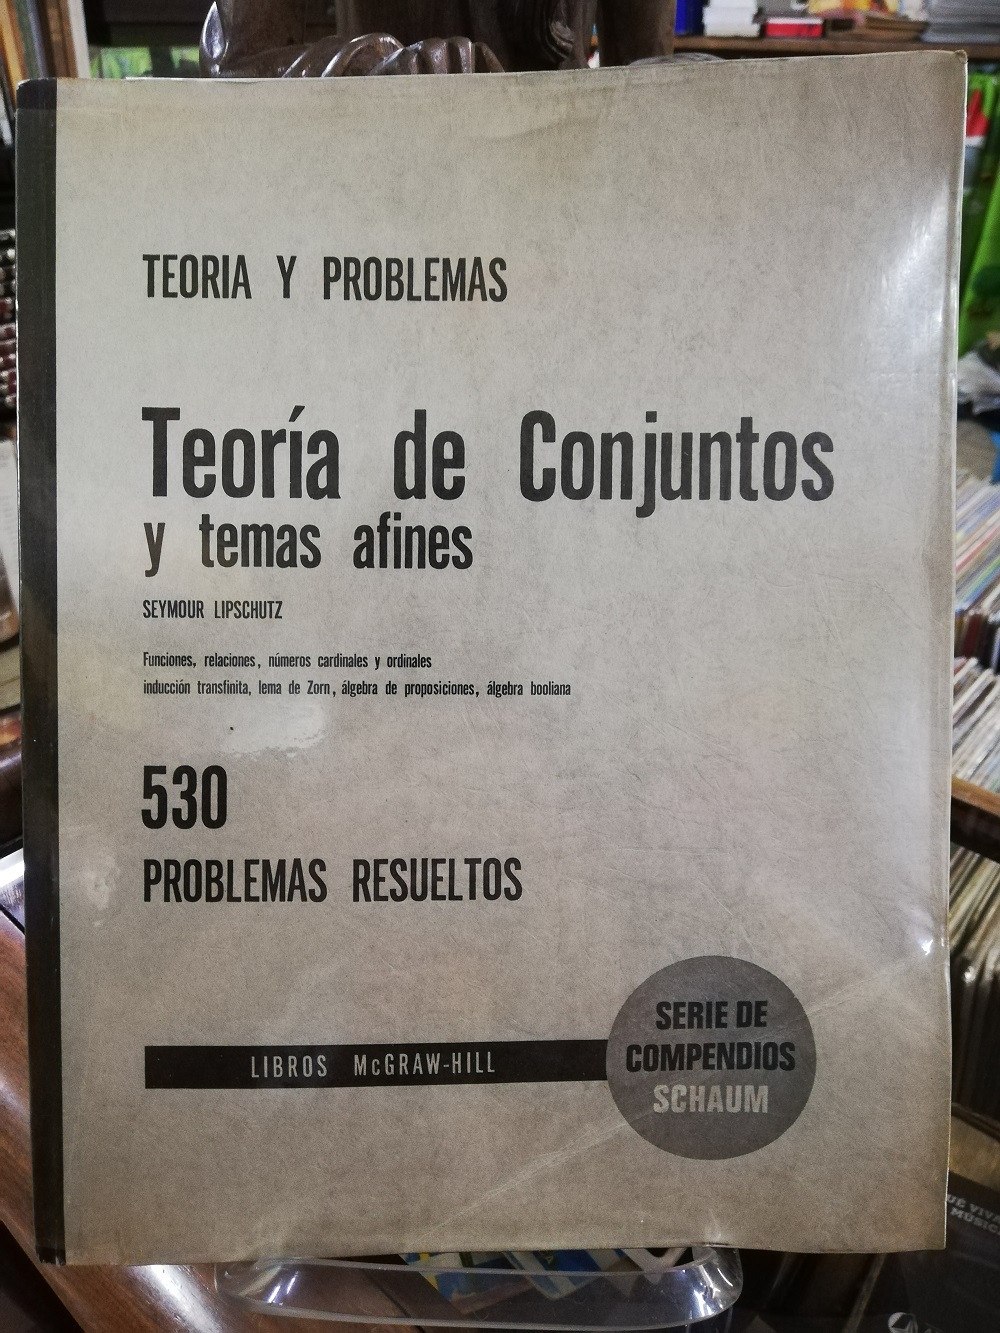 Imagen TEORIA DE CONJUNTOS Y TEMAS AFINES, TEORIA Y PROBLEMAS - SEYMOUR LIPSCHUTZ, SERIE DE COMPENDIOS SCHAUM 1